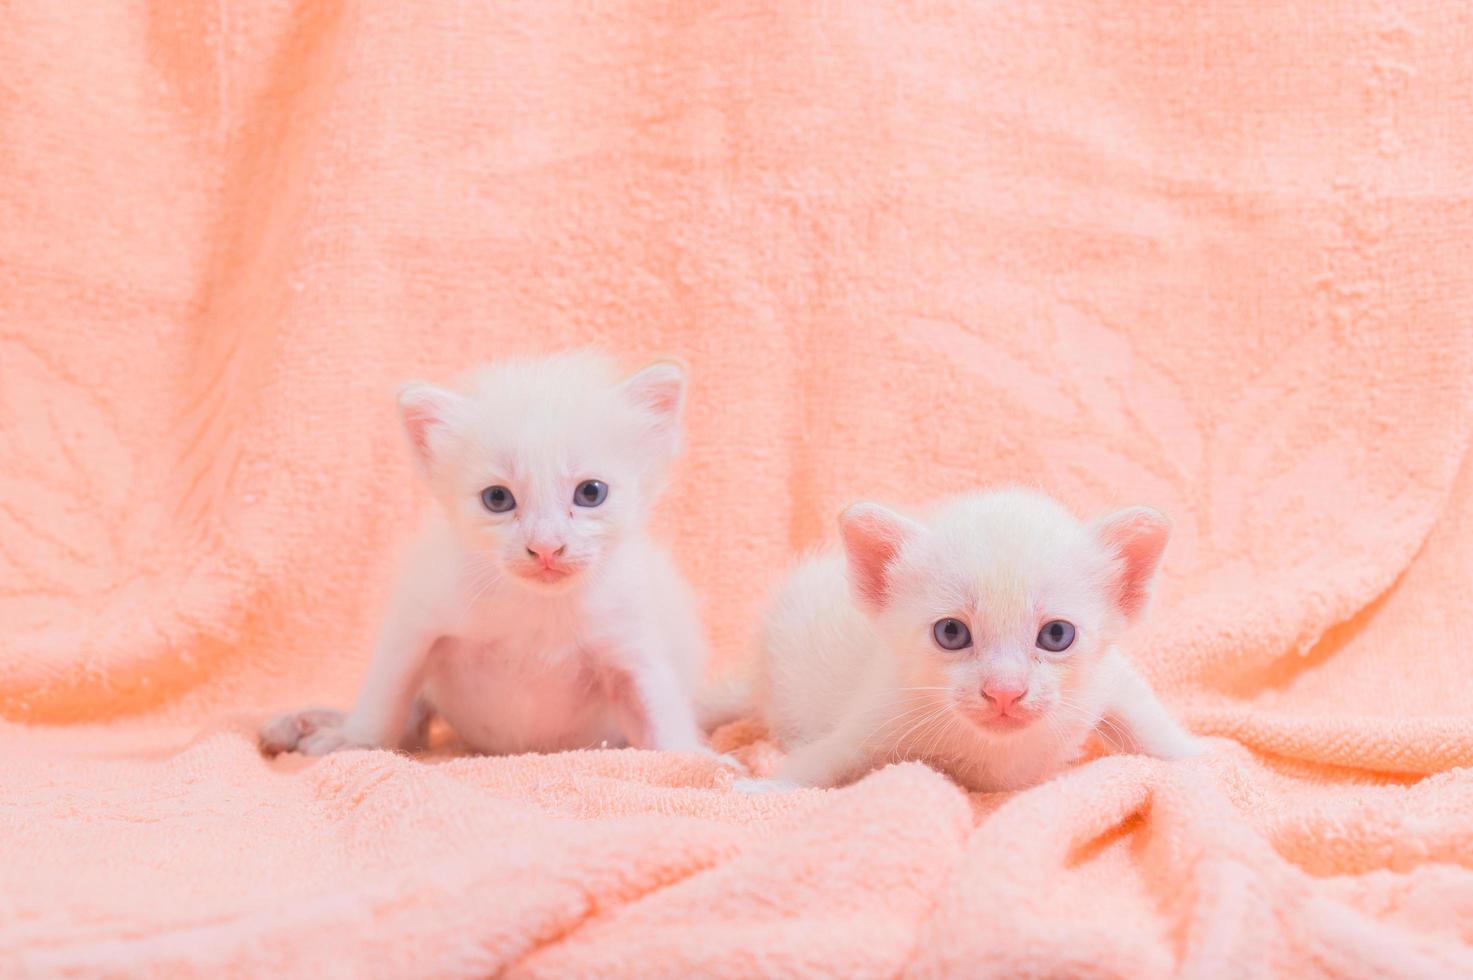 lindos gatitos blancos en una toalla foto